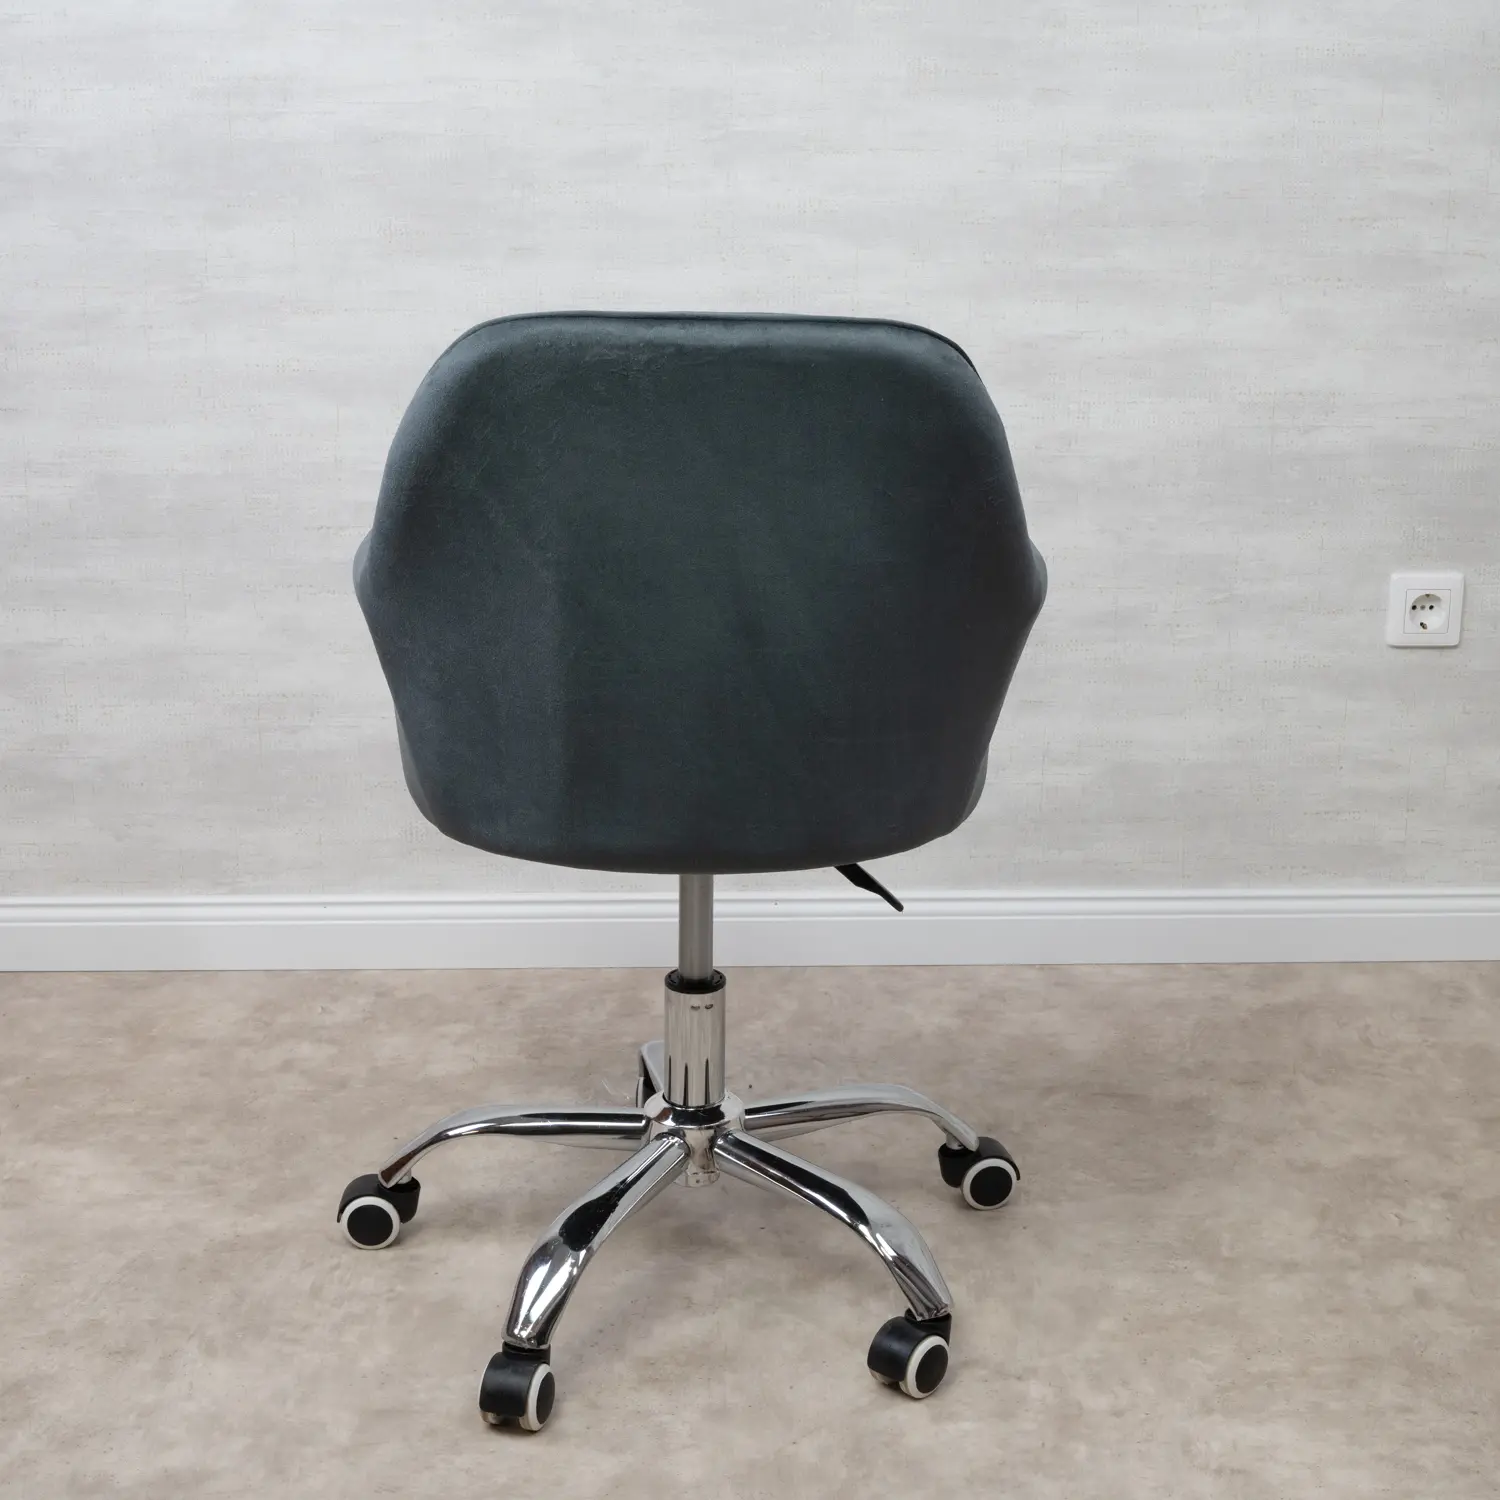 Gurulós szék, irodai szék sötétszürke 2db-os kiszerelés (GURULÓS-SZÉK-1-SÖTÉTSZÜRKE)